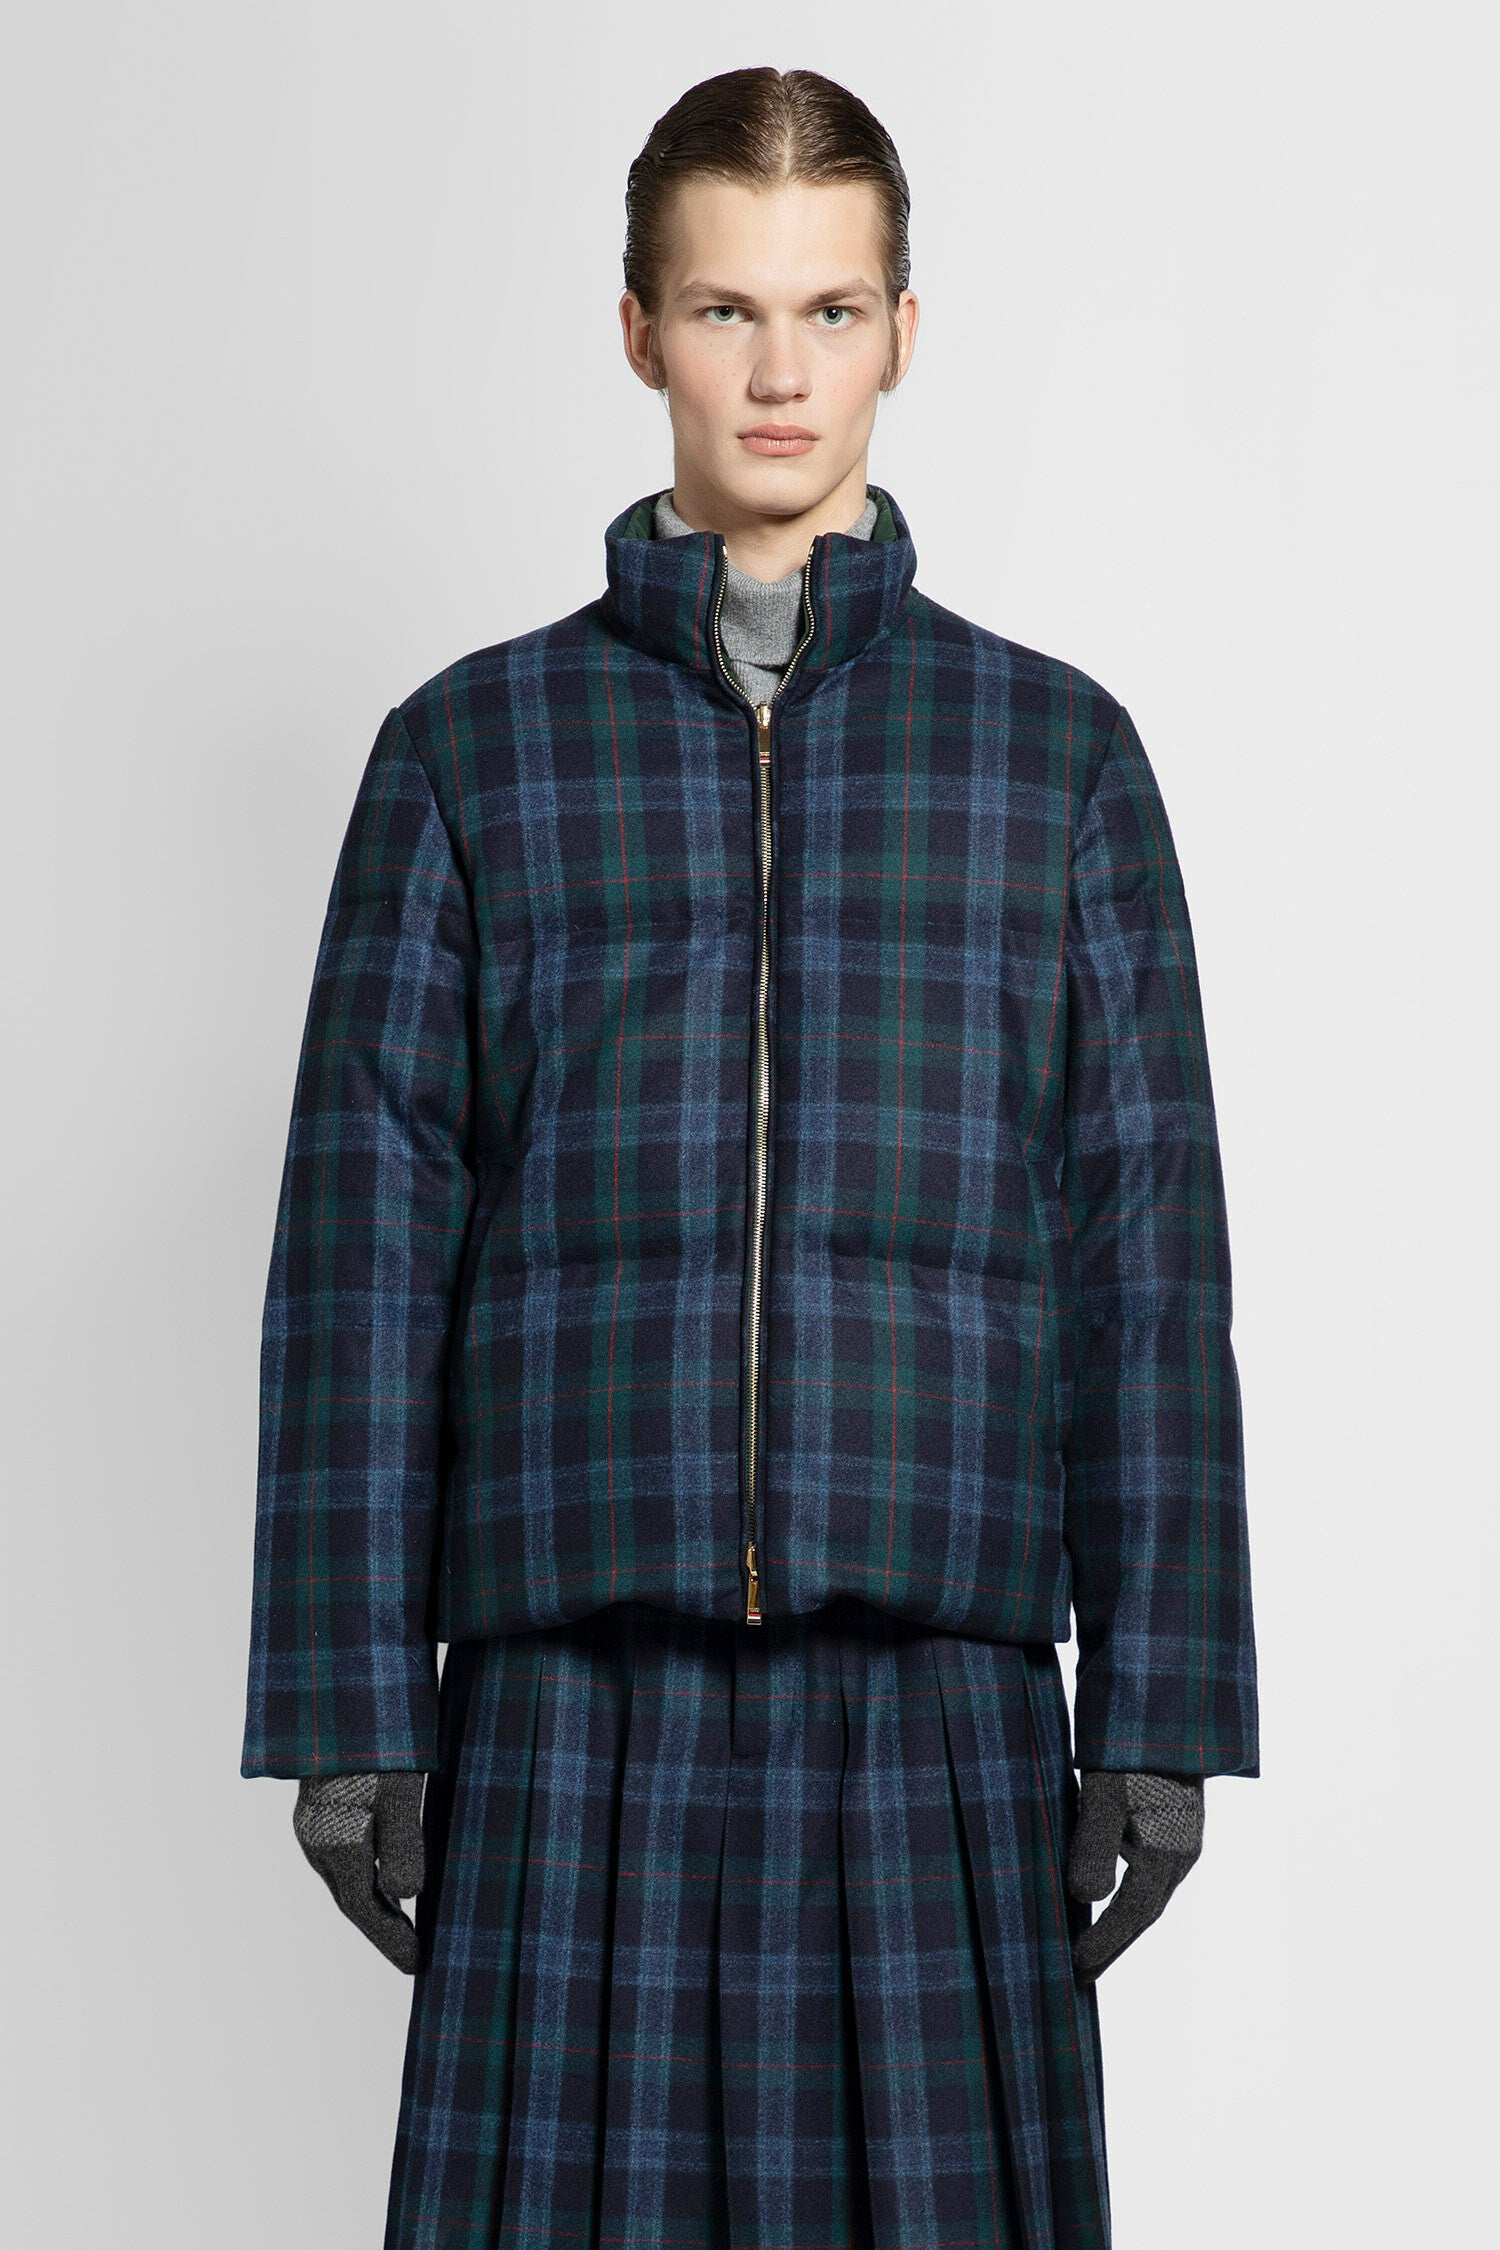 Thom Browne blue tartan flannel reversible jacket